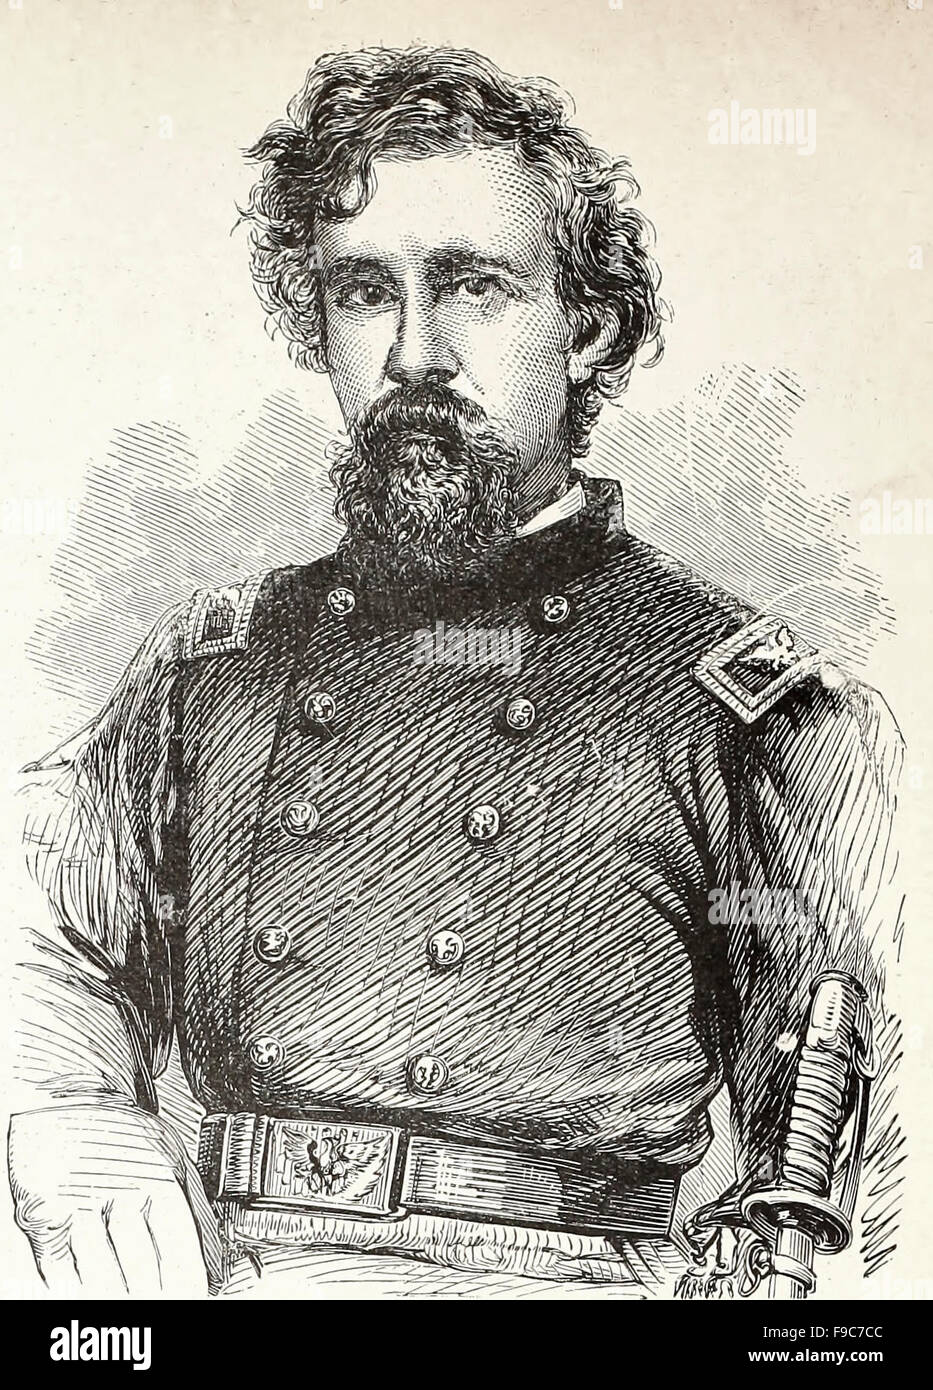 General George F Shepley - George Foster Shepley (1. Januar 1819 – 20. Juli 1878) war ein General im Heer Union während des amerikanischen Bürgerkriegs. Im Juni 1862 ernannte er militärische und 18. Gouverneur von Louisiana General Benjamin Butler. Er diente später als ein amerikanischer Jurist. Stockfoto